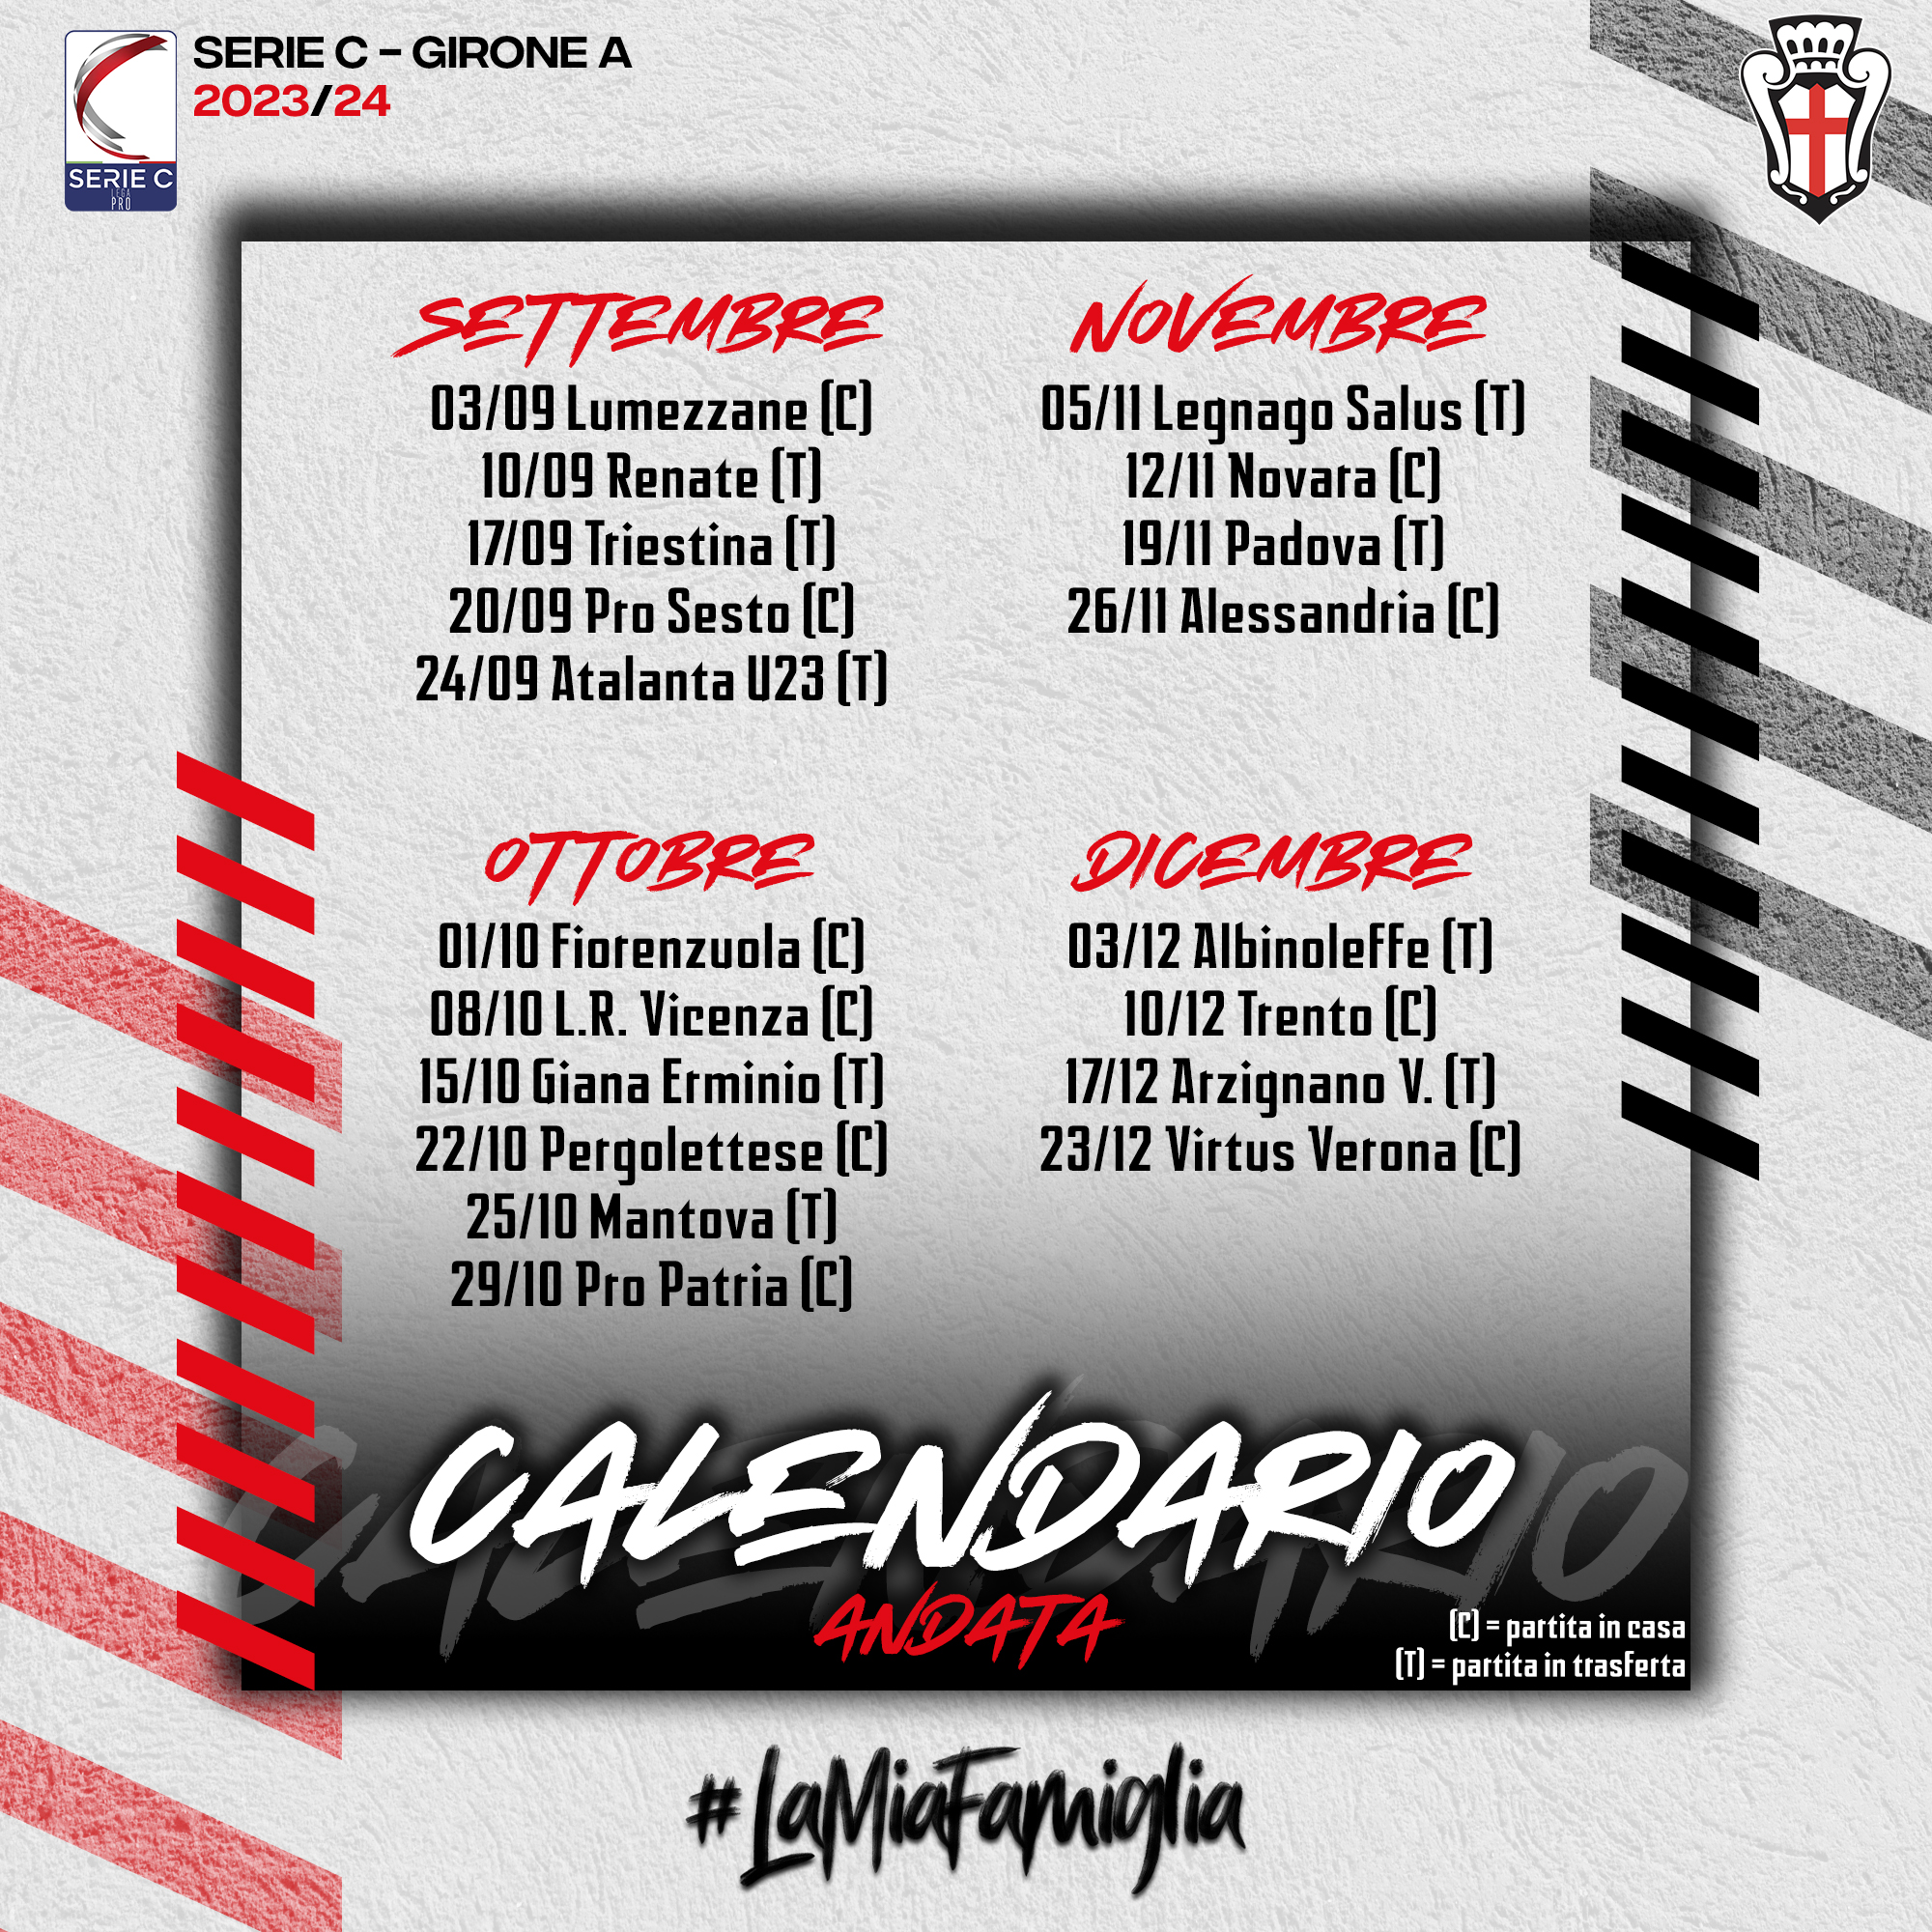 Ufficializzato il calendario della Serie C 2023/24